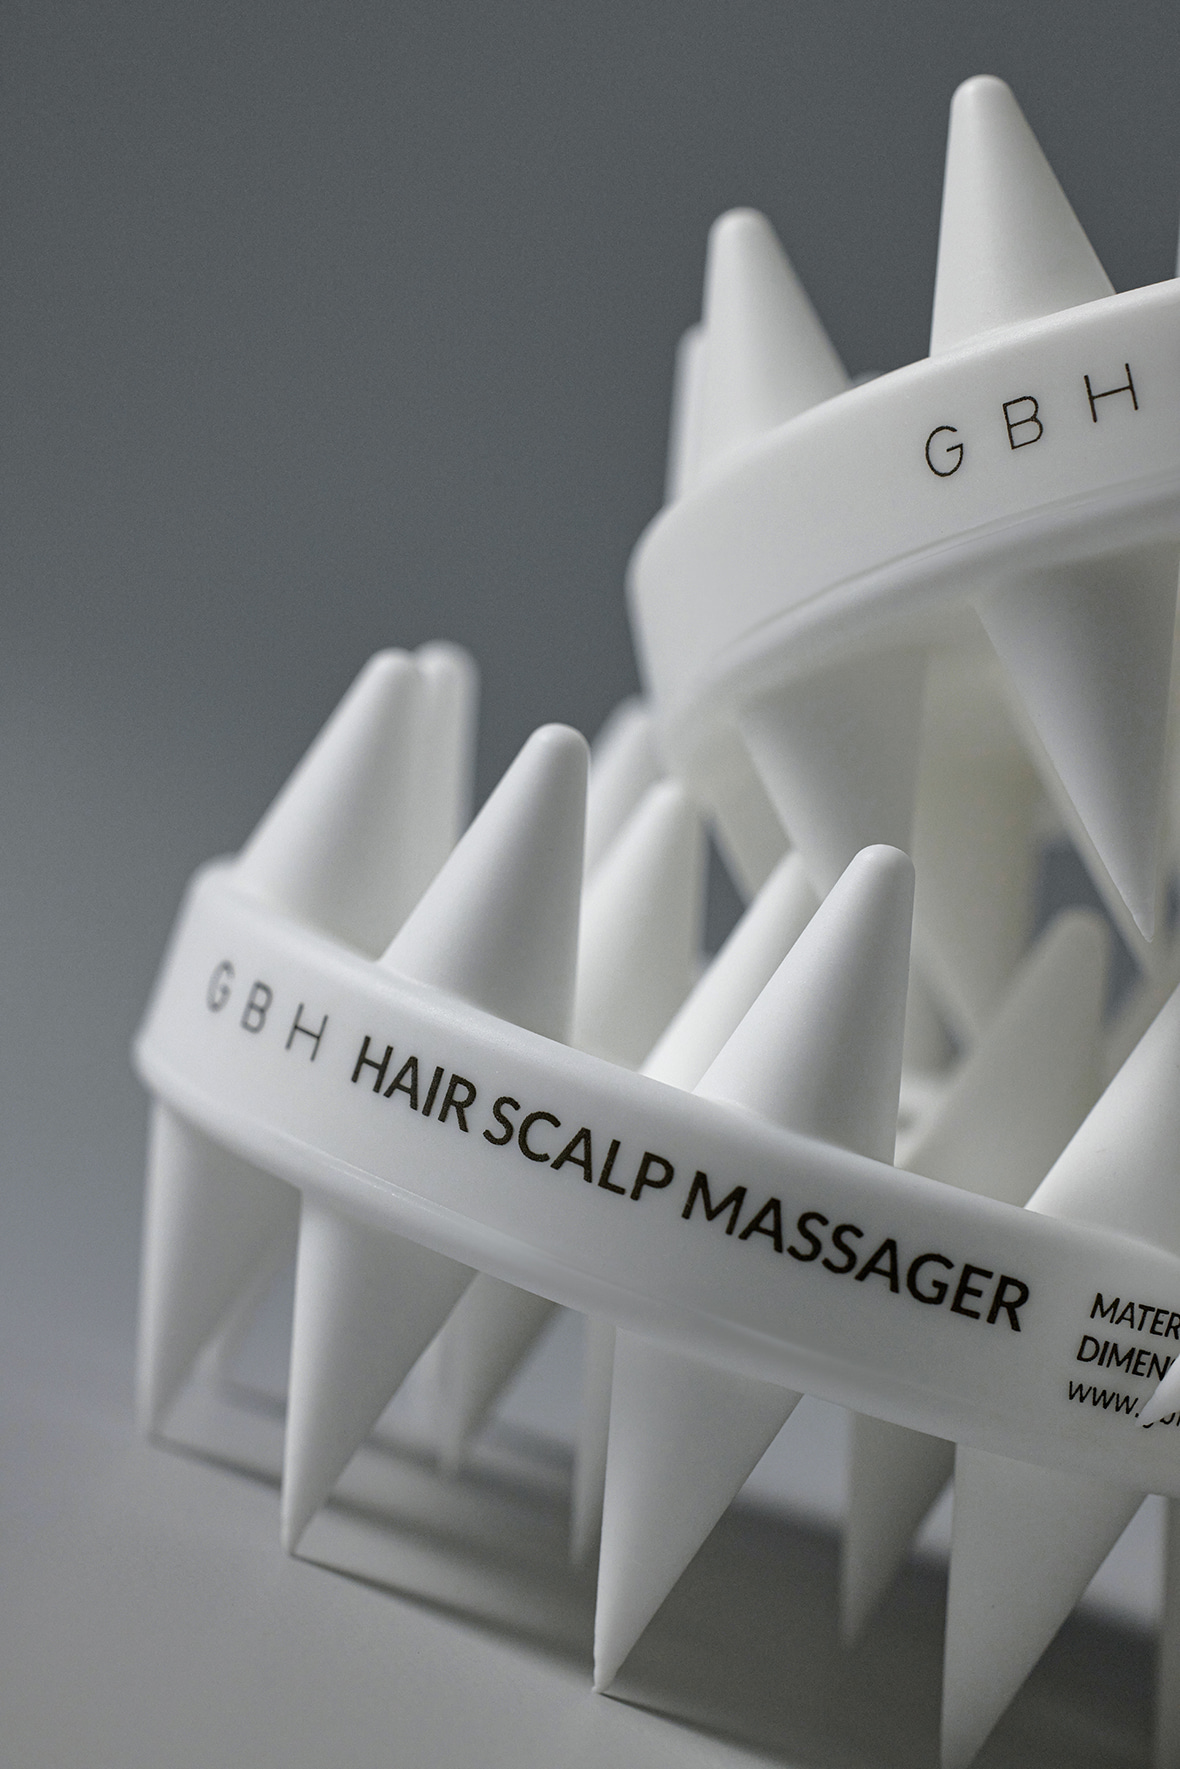 GBH Hair Scalp Masssager